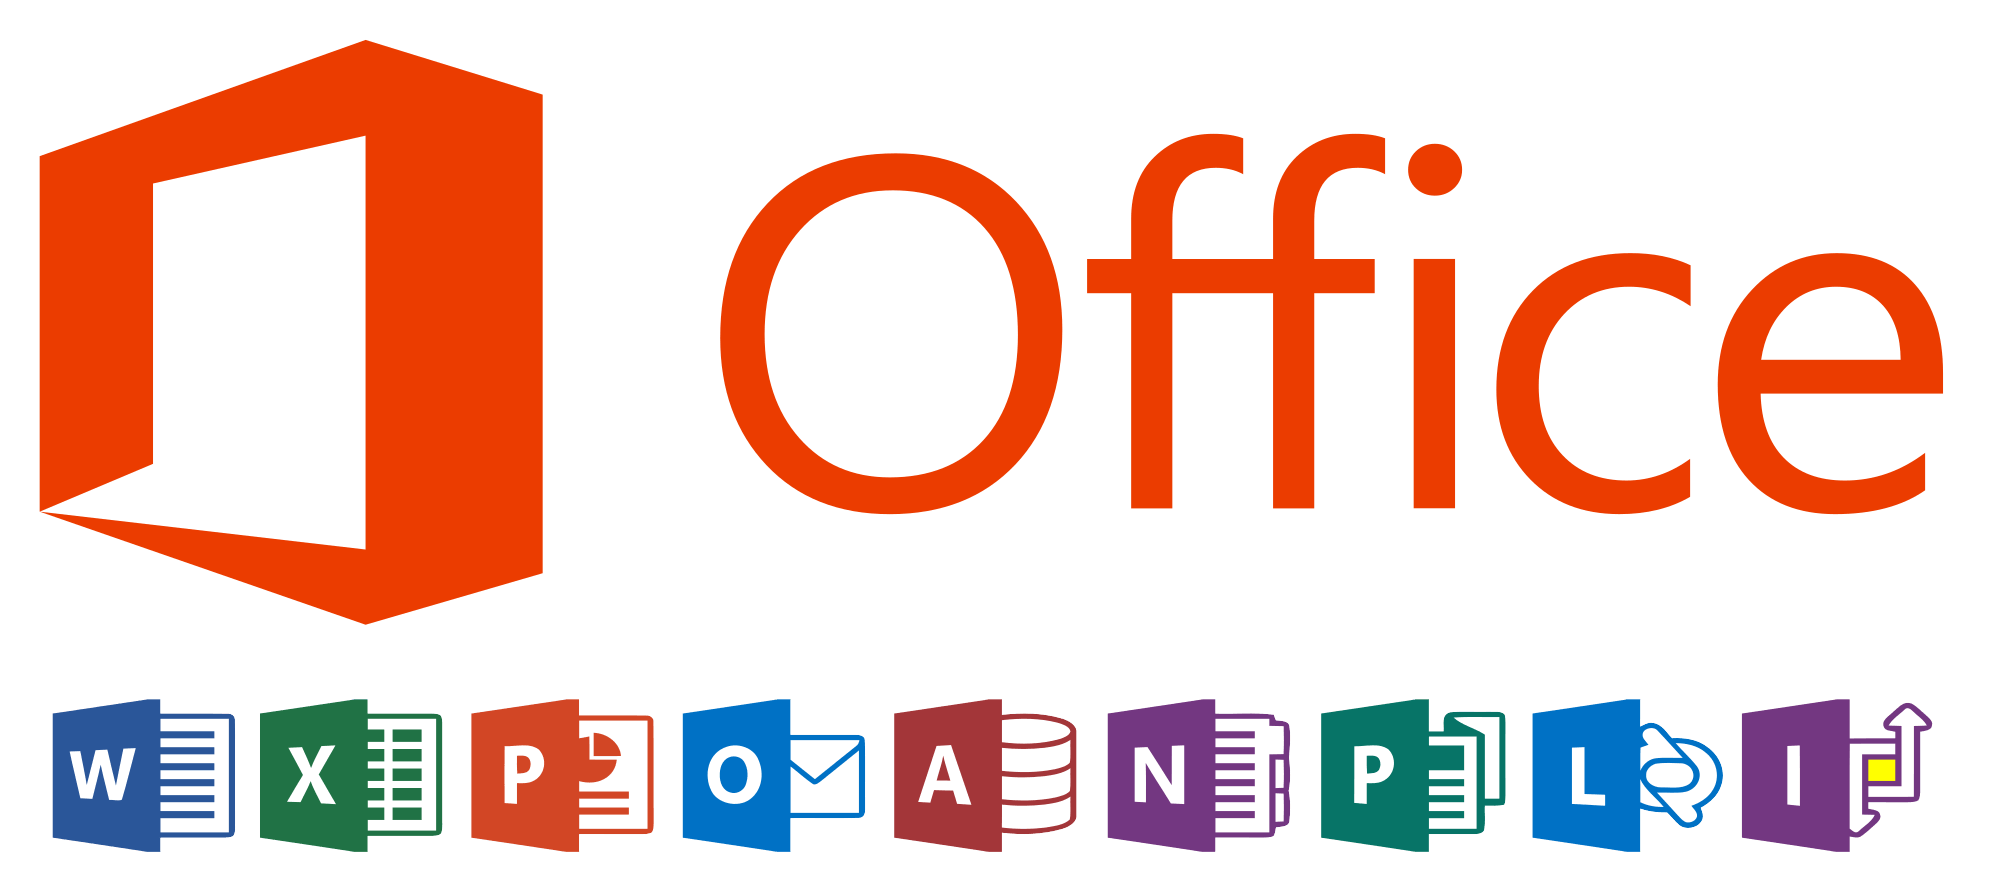 Microsoft Office Logo - Microsoft Office logos.svg